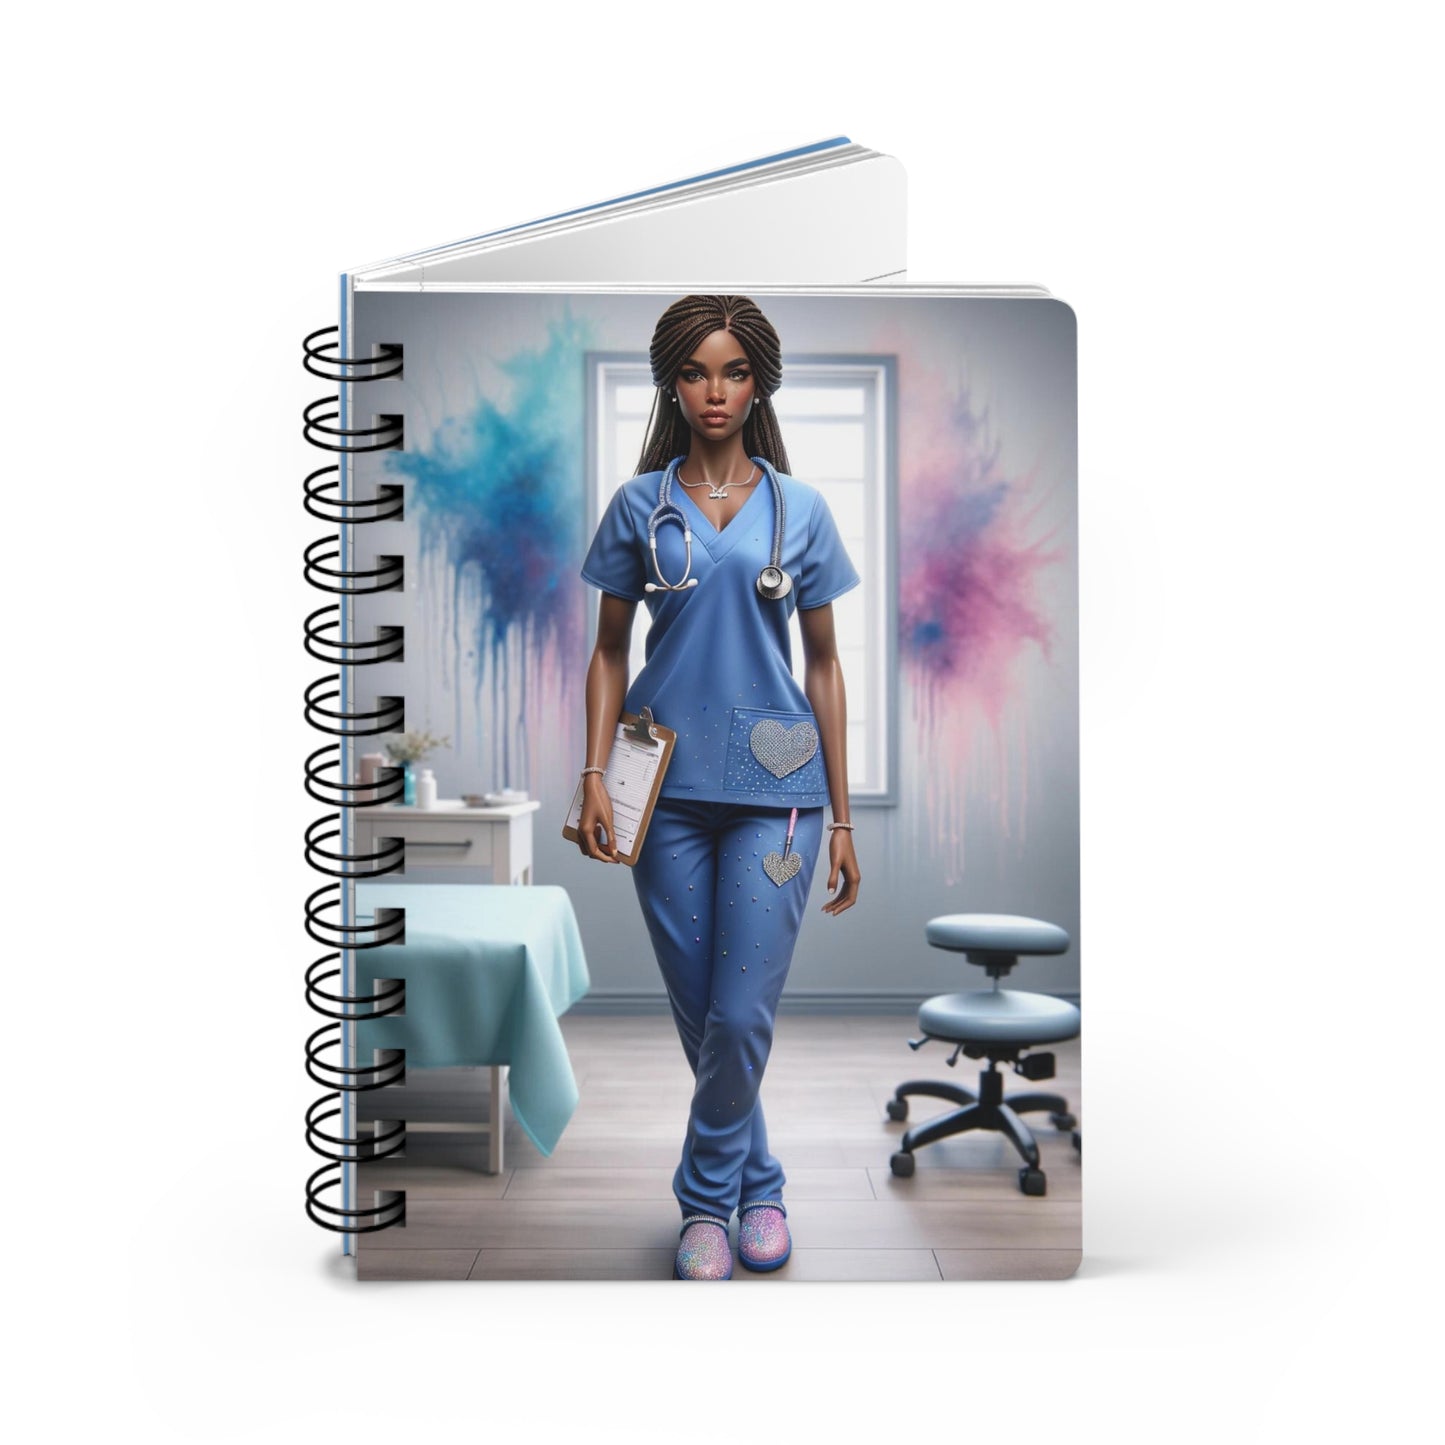 Nurse Spiral Notebook